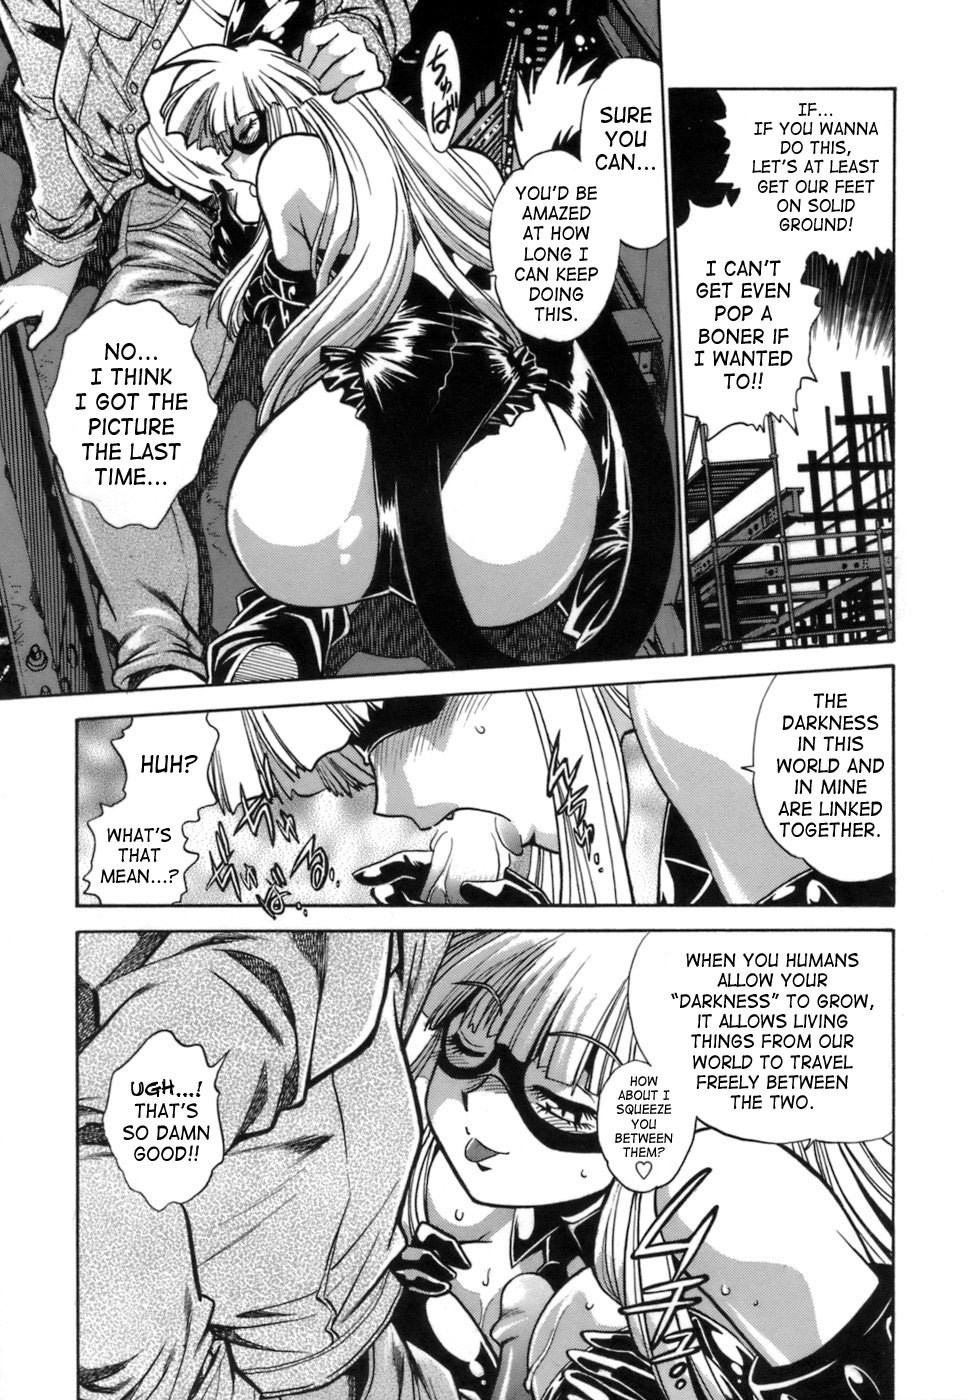 Tail Chaser Vol.1 39 hentai manga